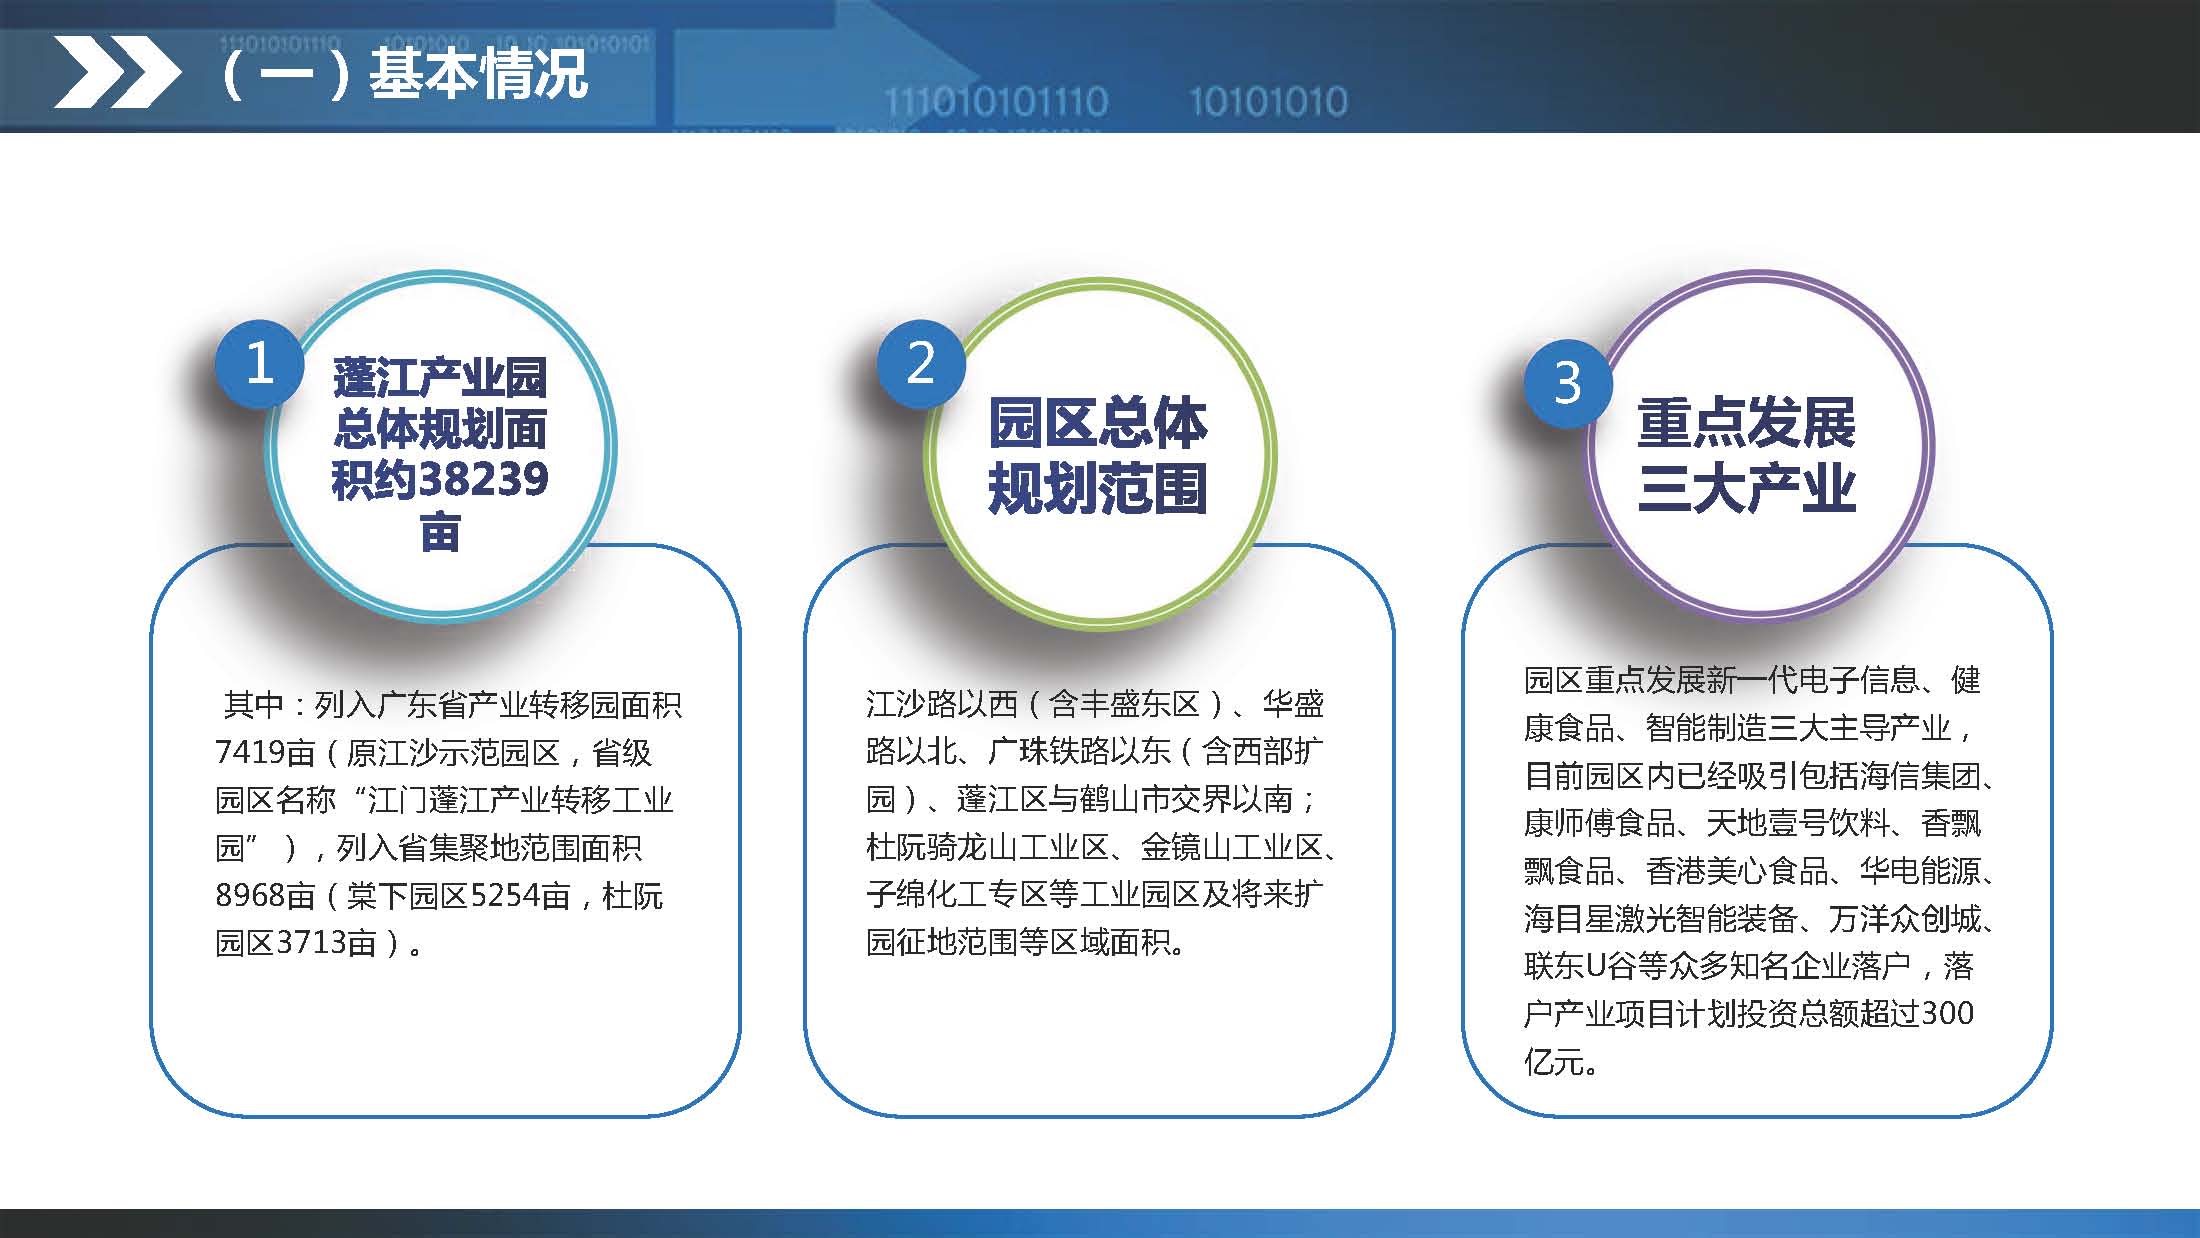 《江门蓬江产业转移工业园建设三年行动计划（2020-2022年）》图文解读_页面_05.jpg